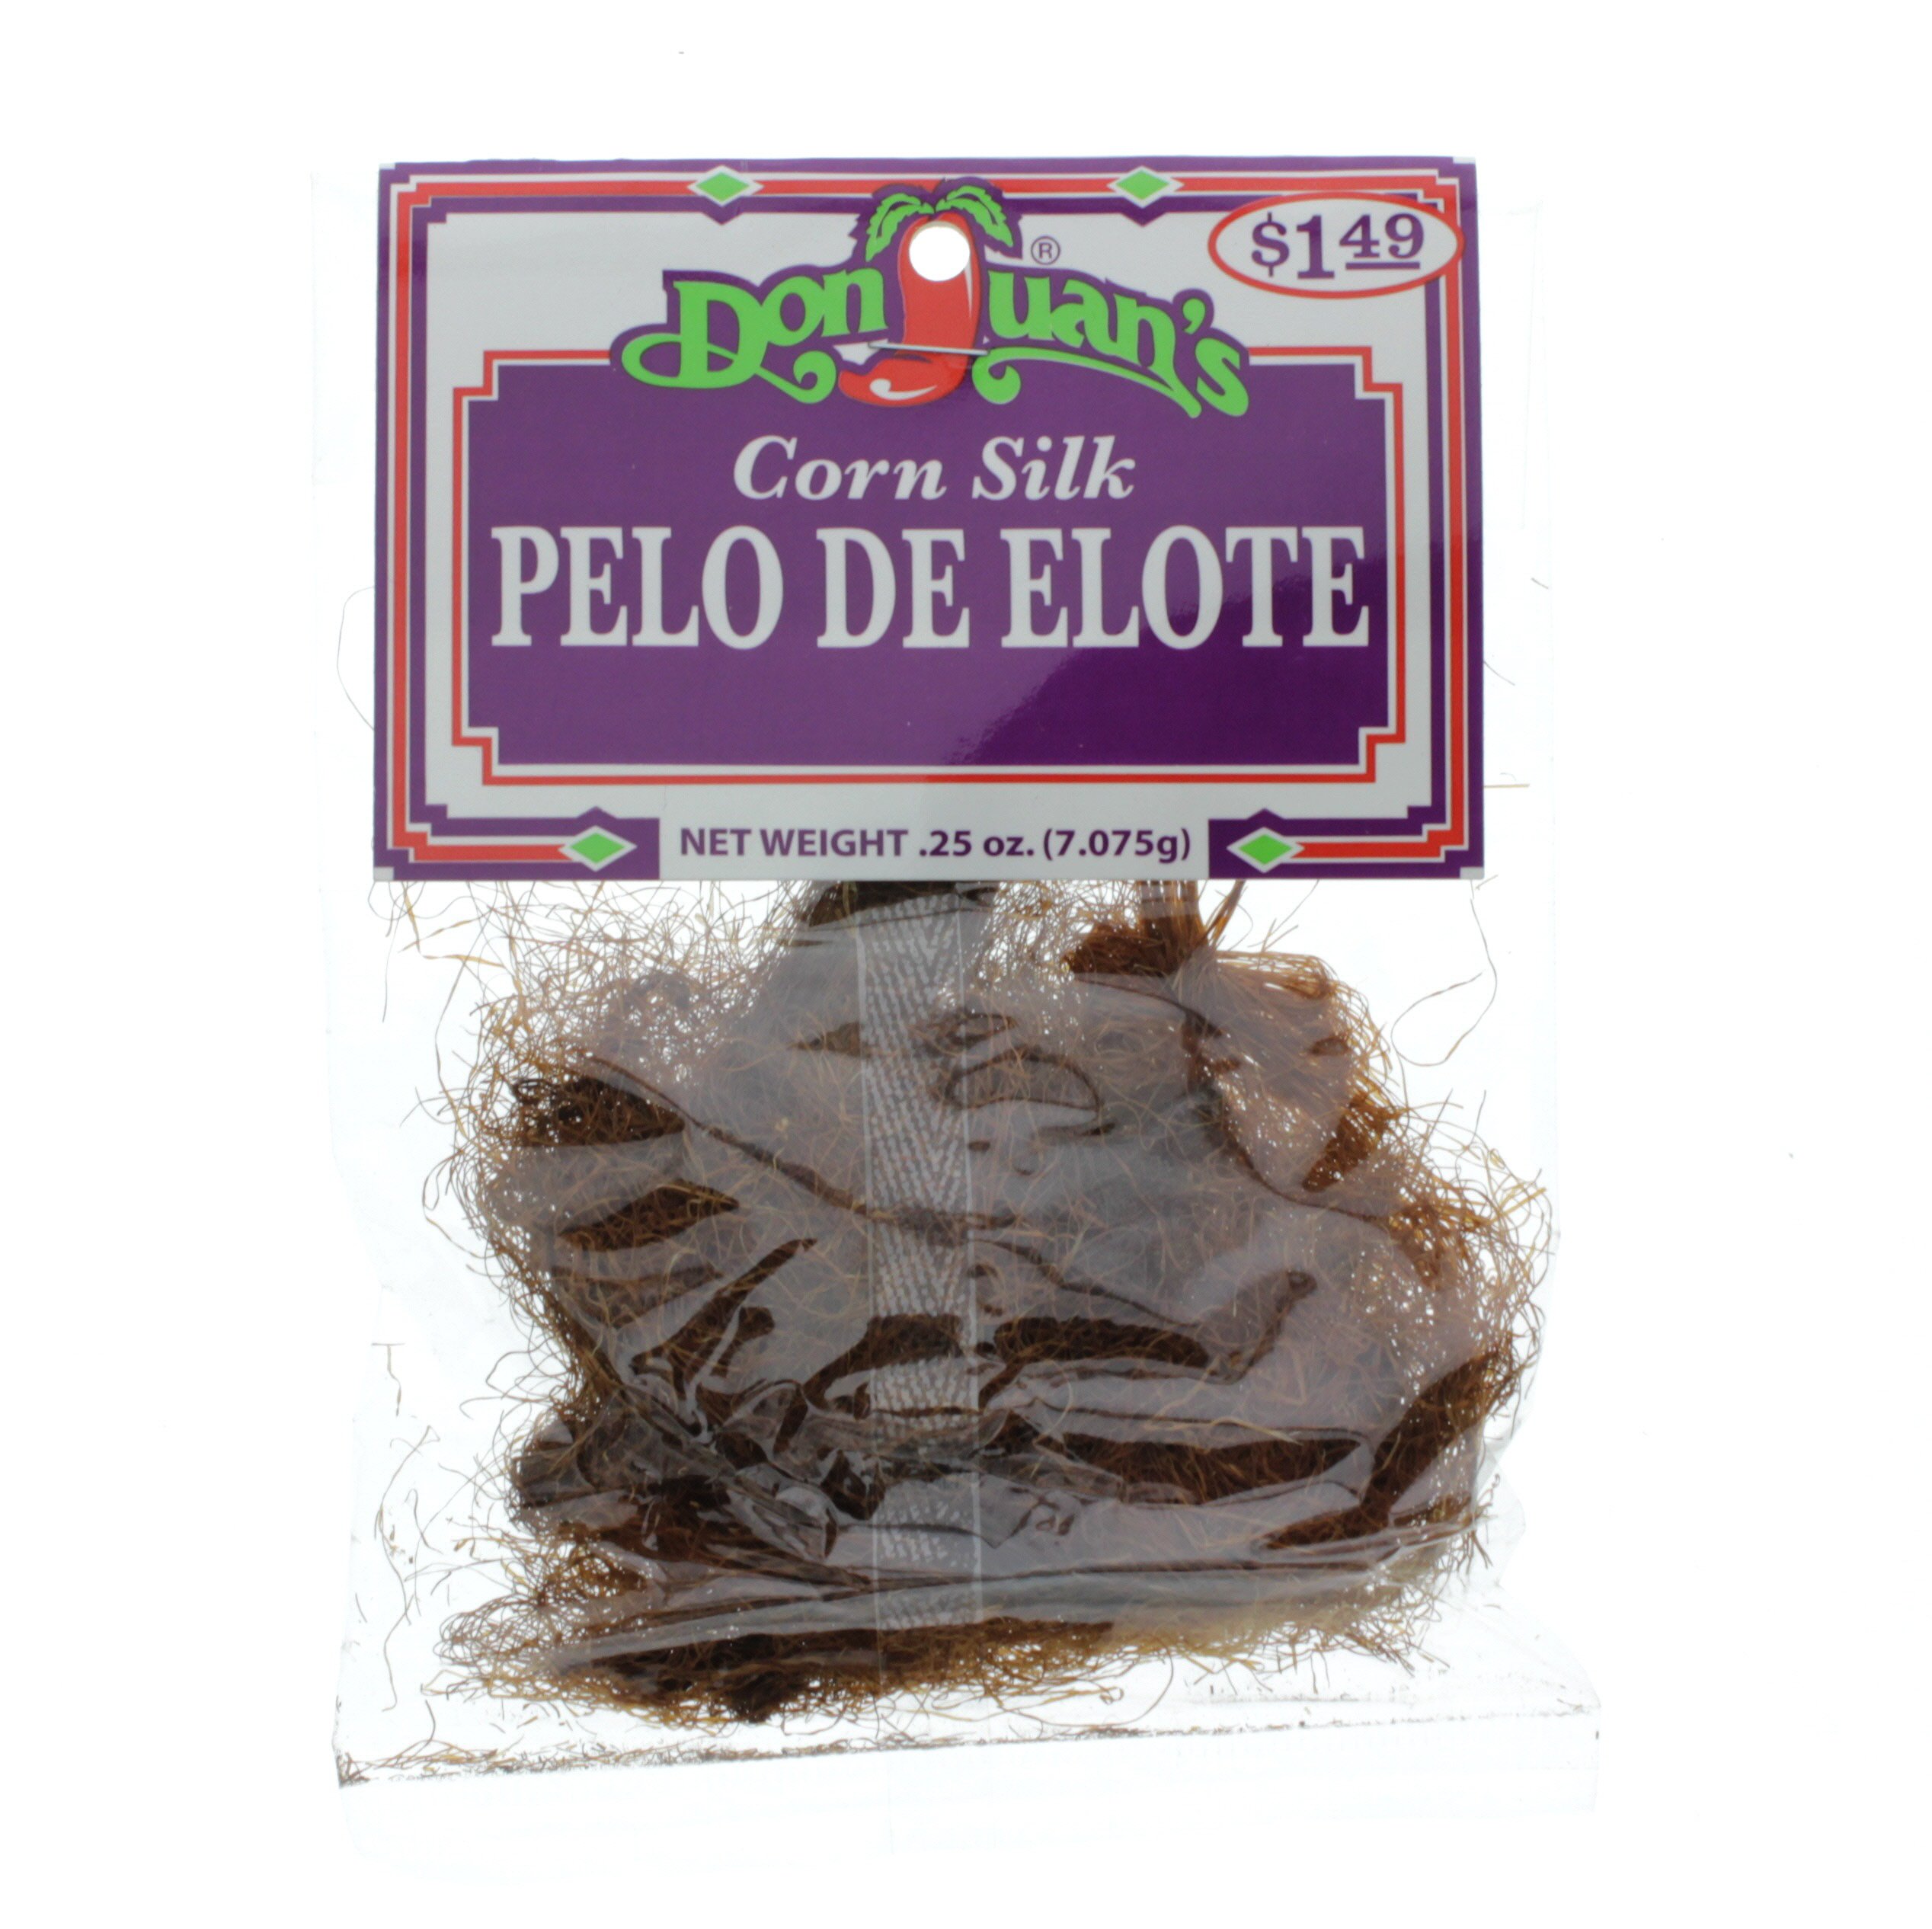 Don Juan's Pelo De Elote Corn Silk - Shop Herbs & Spices at H-E-B